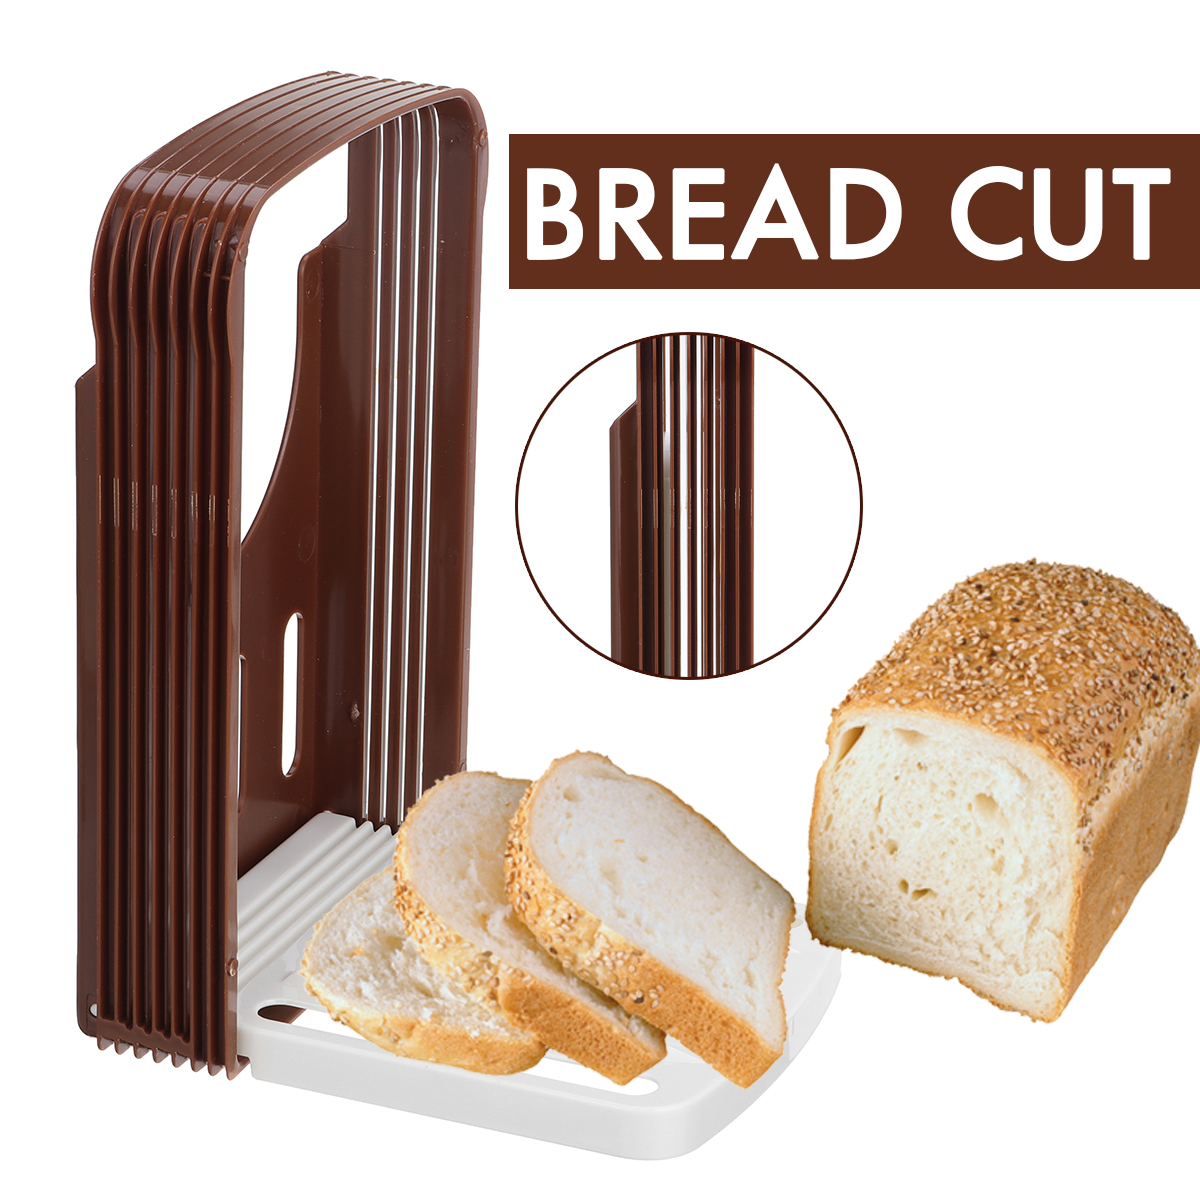 Practical-Kitchen-Bread-Loaf-Toast-Slicer-Cutter-Maker-Mold-Guide-Slicing-Tools-1695112-2